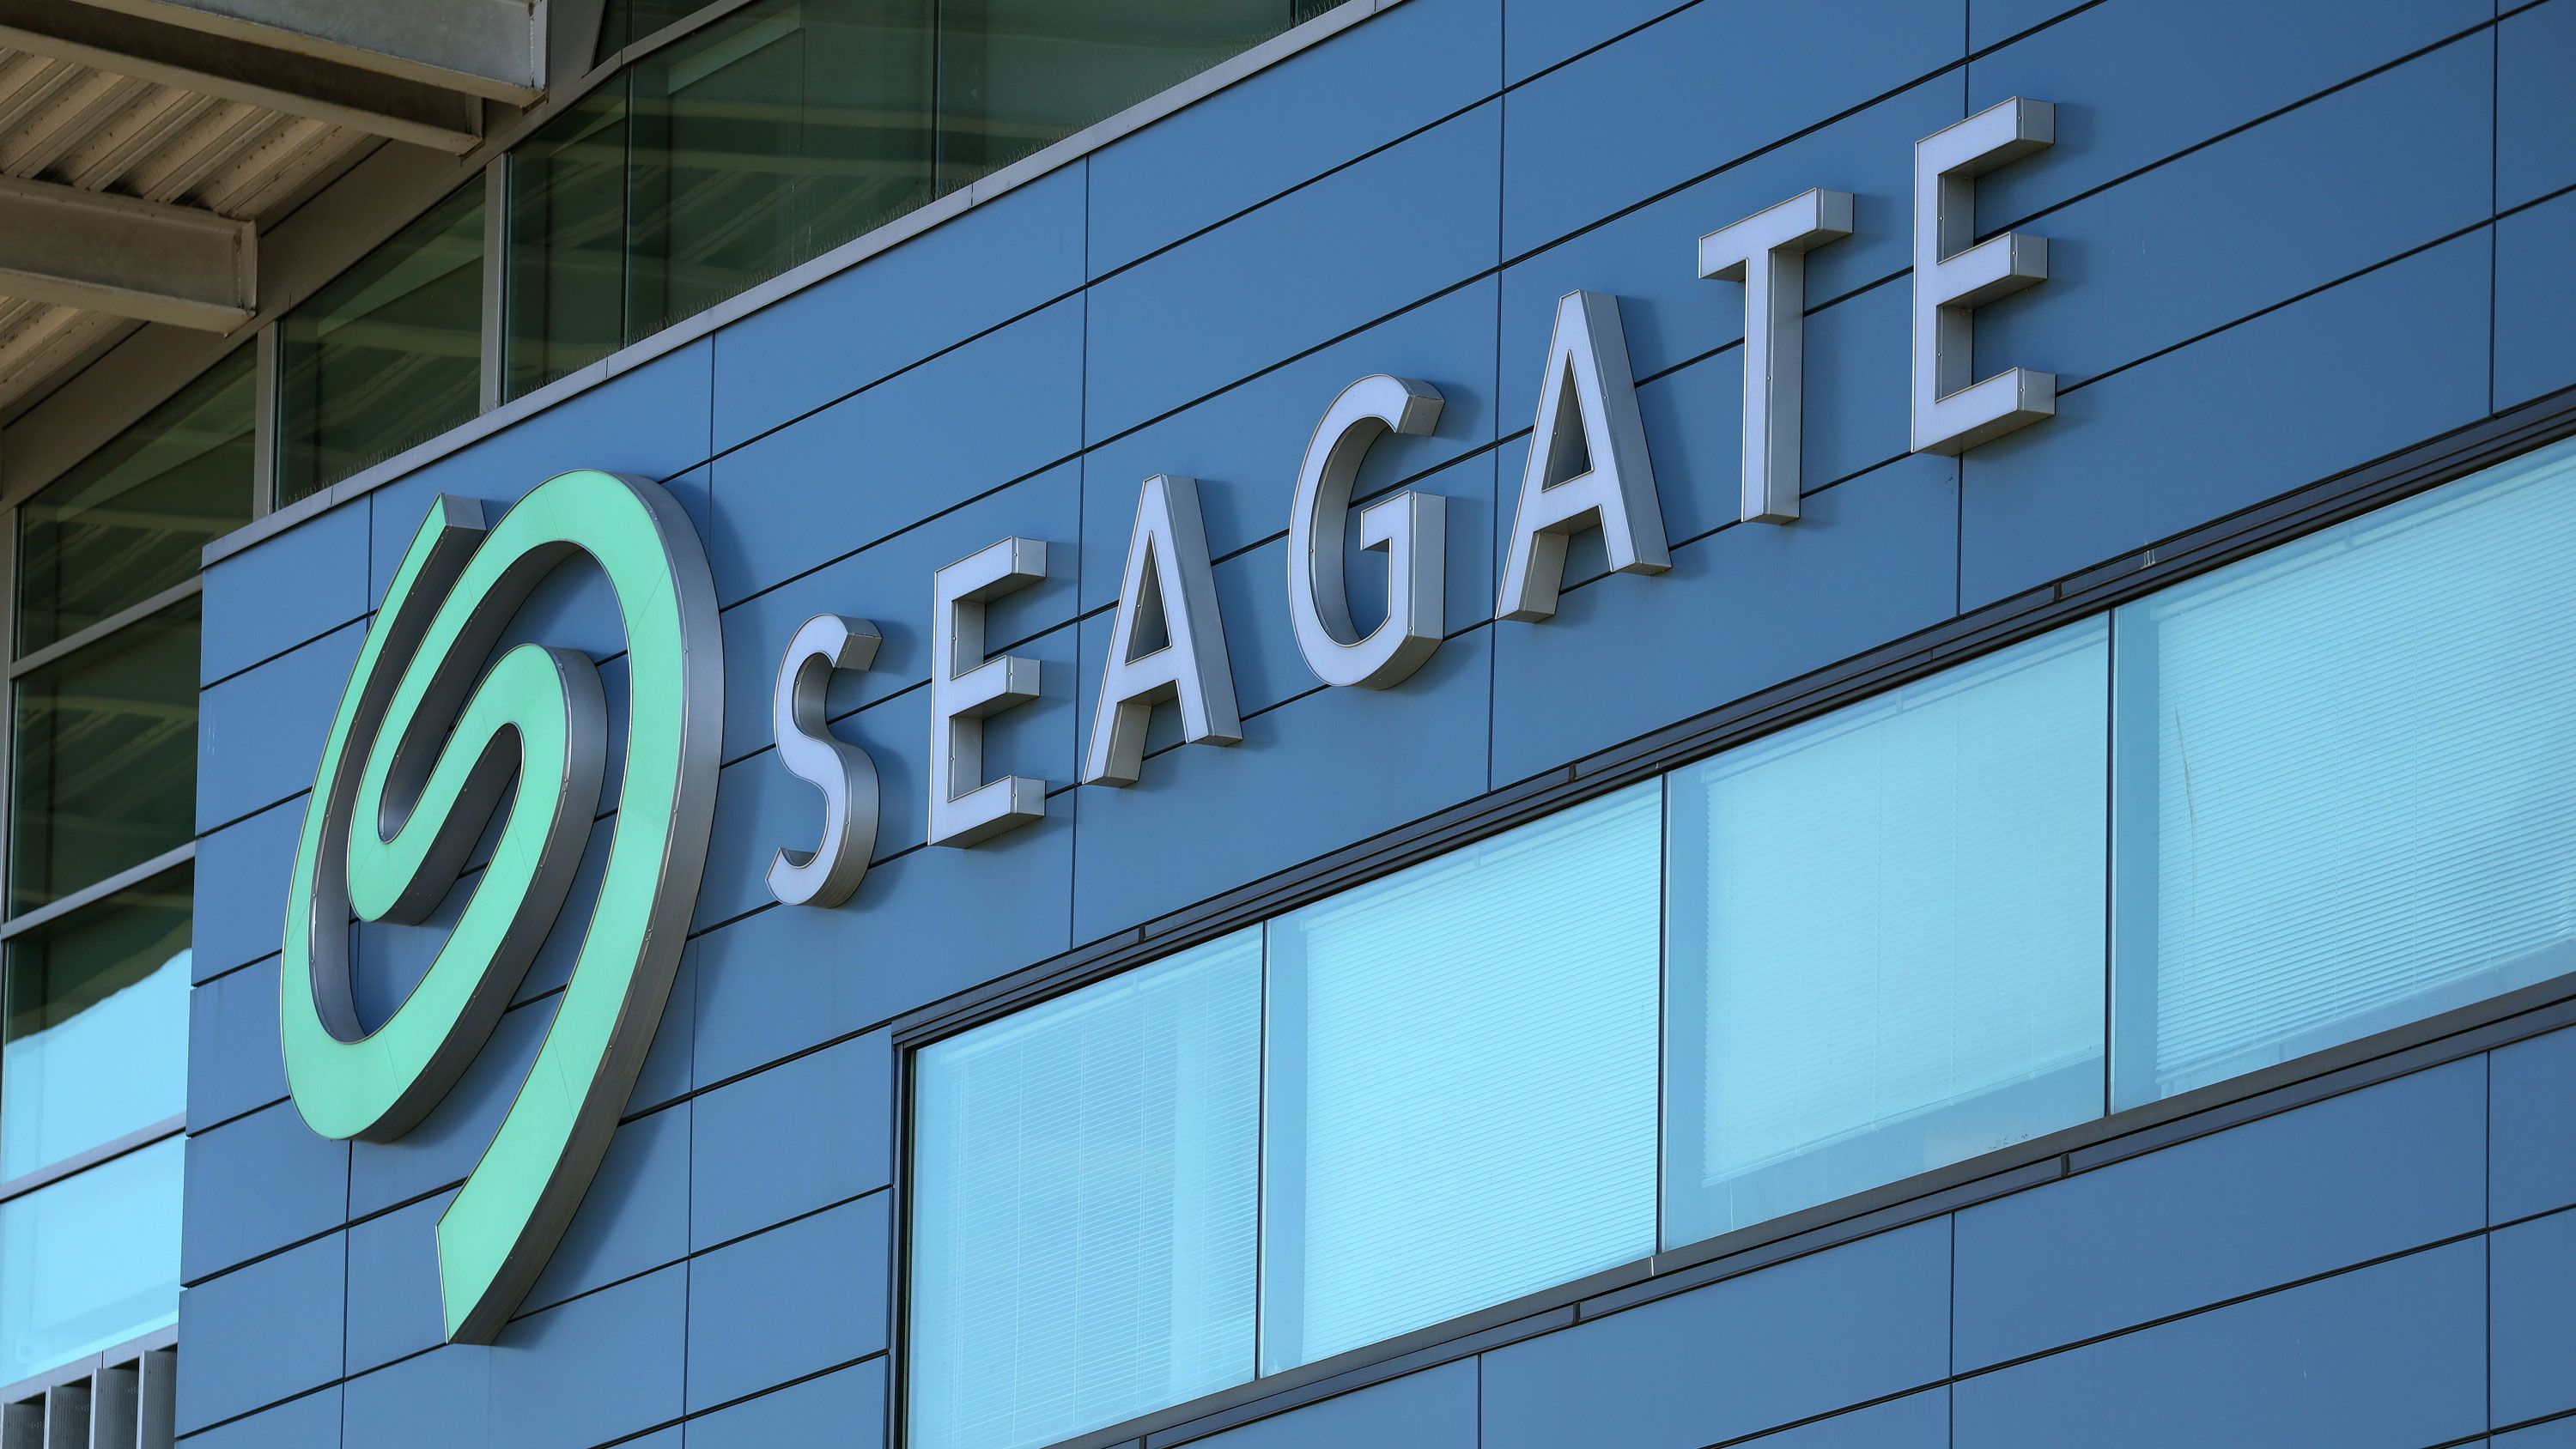 Seagate розпочала продаж жорстких дисків з рекордною ємністю - понад 30 ТБ